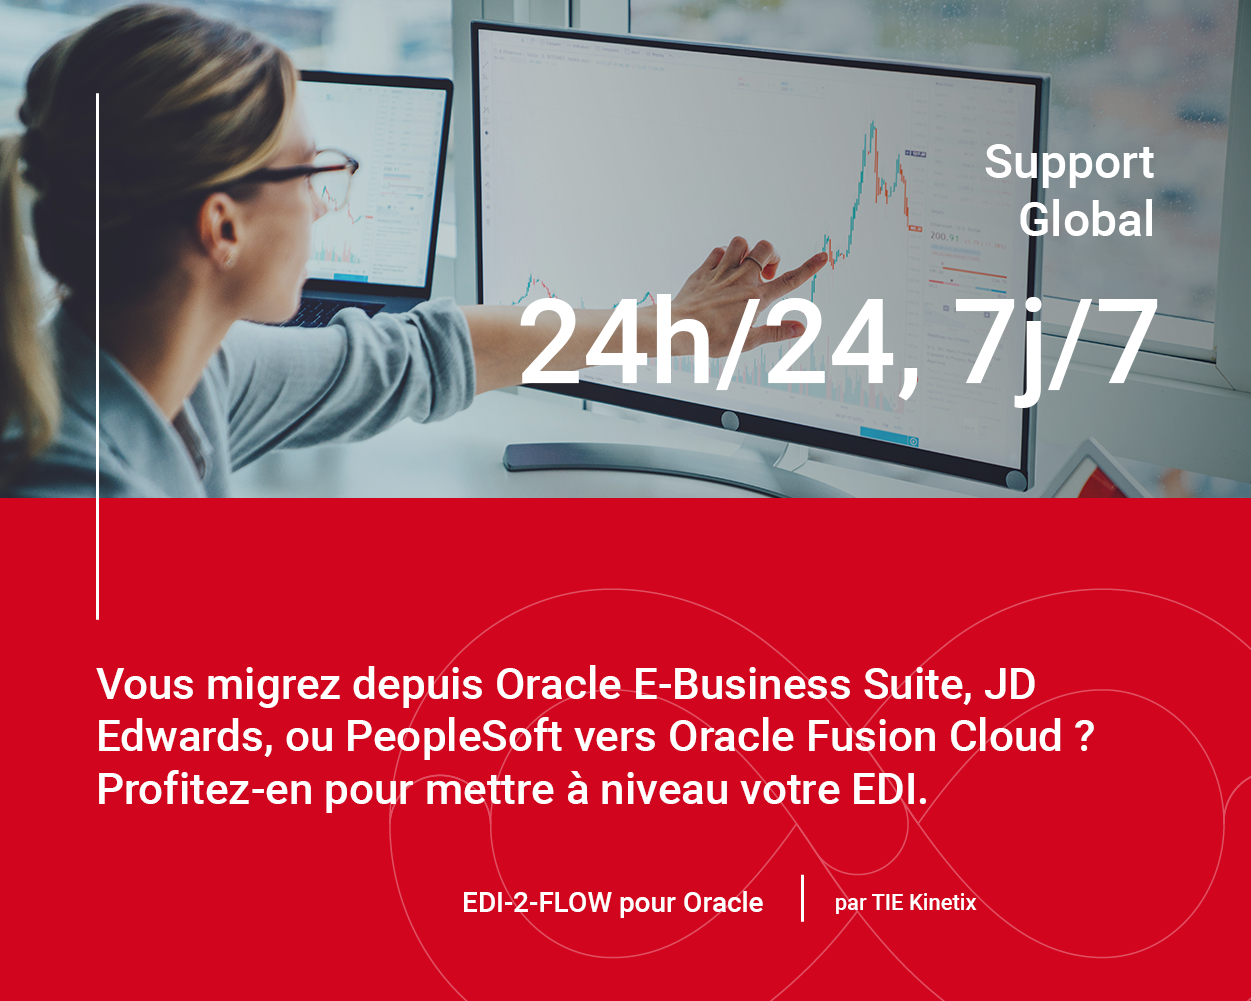 Optimisez et développez votre entreprise avec Oracle et l'EDI